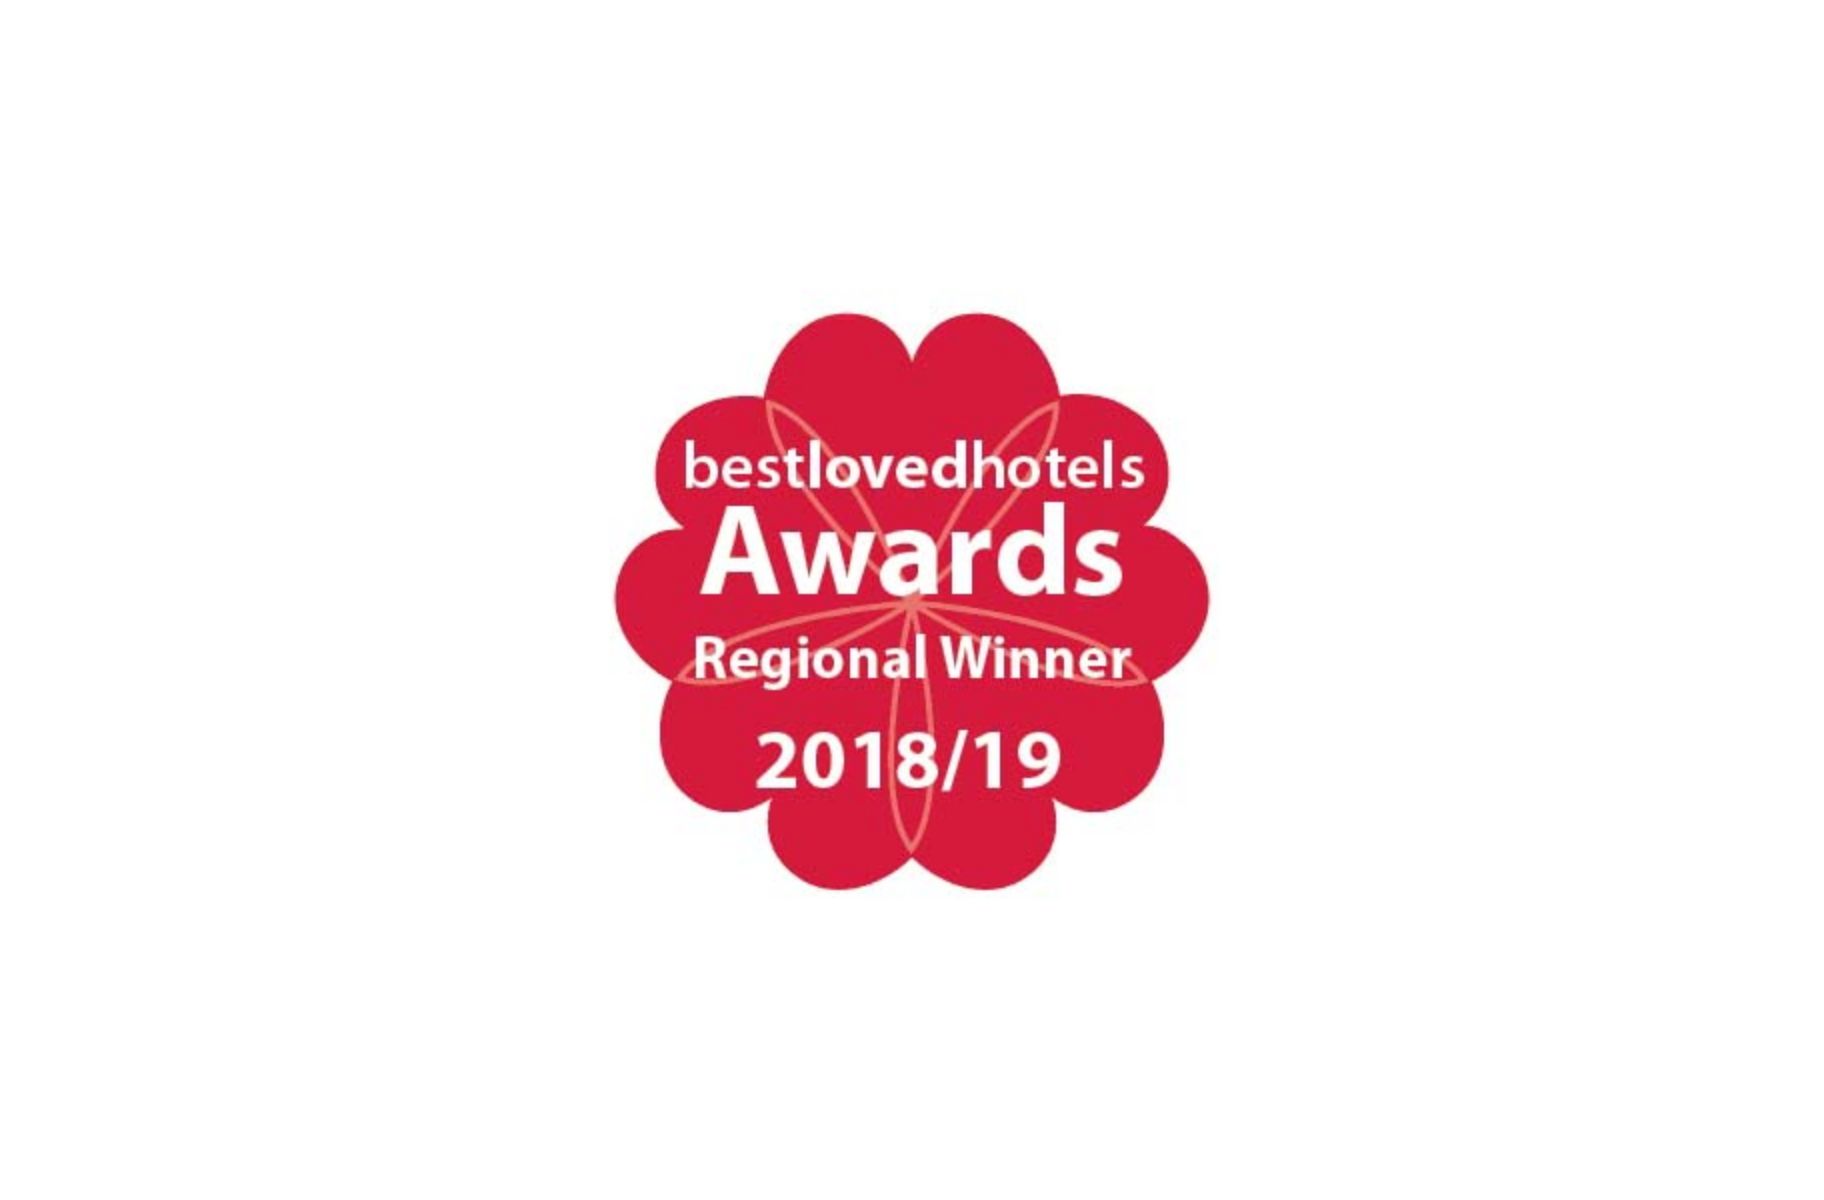 Best Loved Hotels Awards